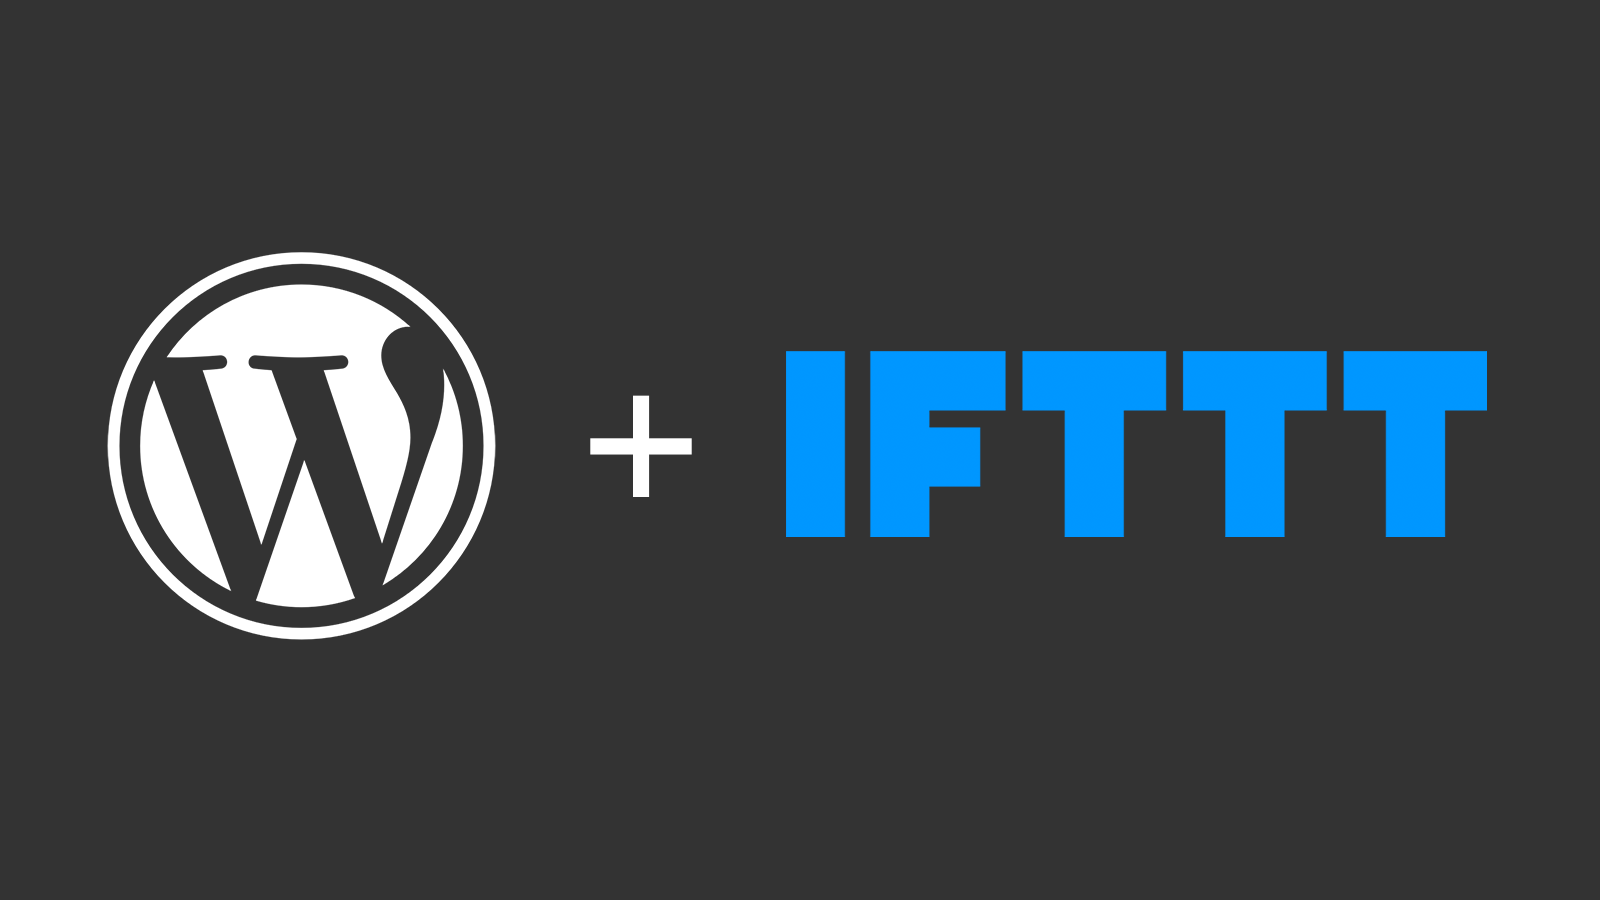 Share WordPress Posts to Social Media using Custom IFTTT Applets